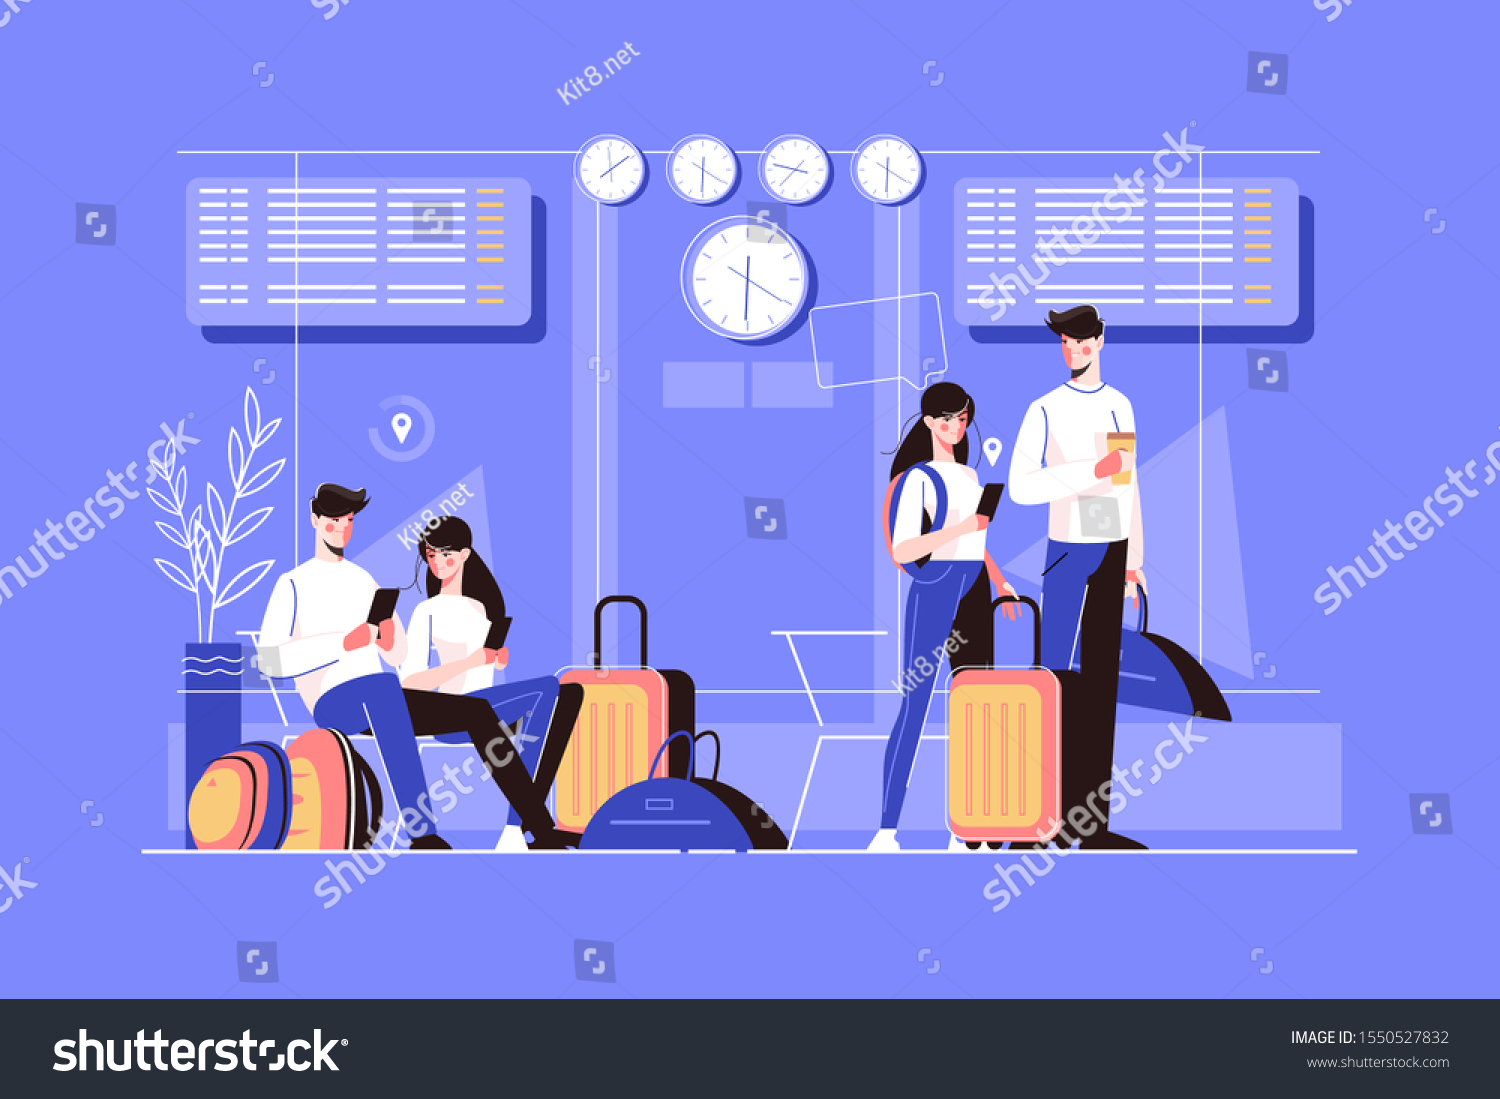 空港のラウンジにいる少女と少年のベクターイラスト 異なるポーズの観光客キャラクター 座って待ち受け 荷物と一緒に飛行機に乗る人 飛行機のフラットなデザイン のベクター画像素材 ロイヤリティフリー